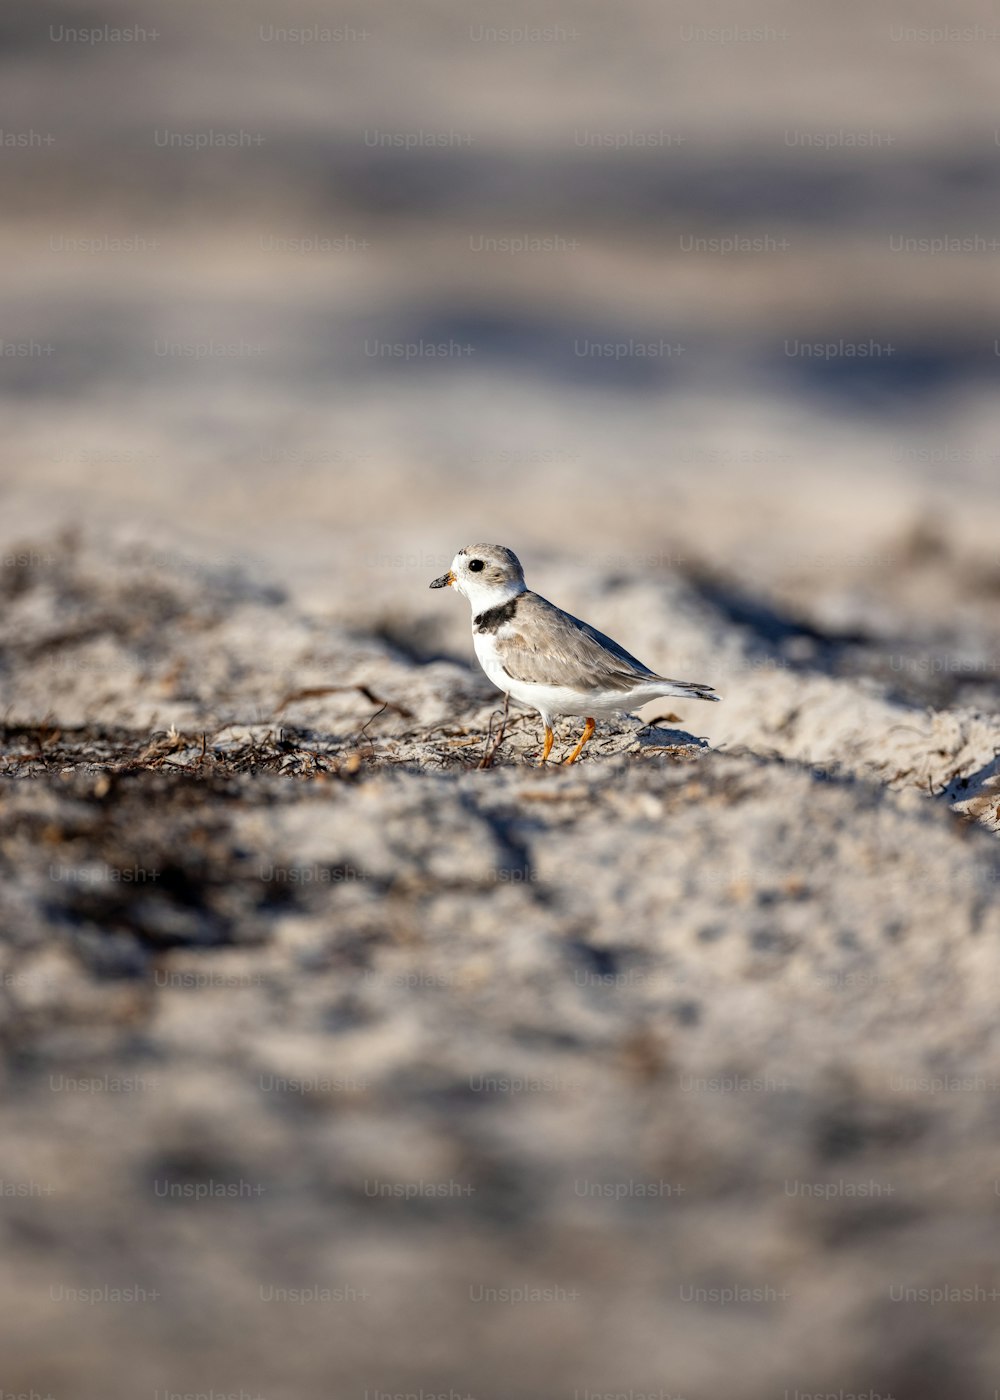 Un pequeño pájaro parado en una playa de arena